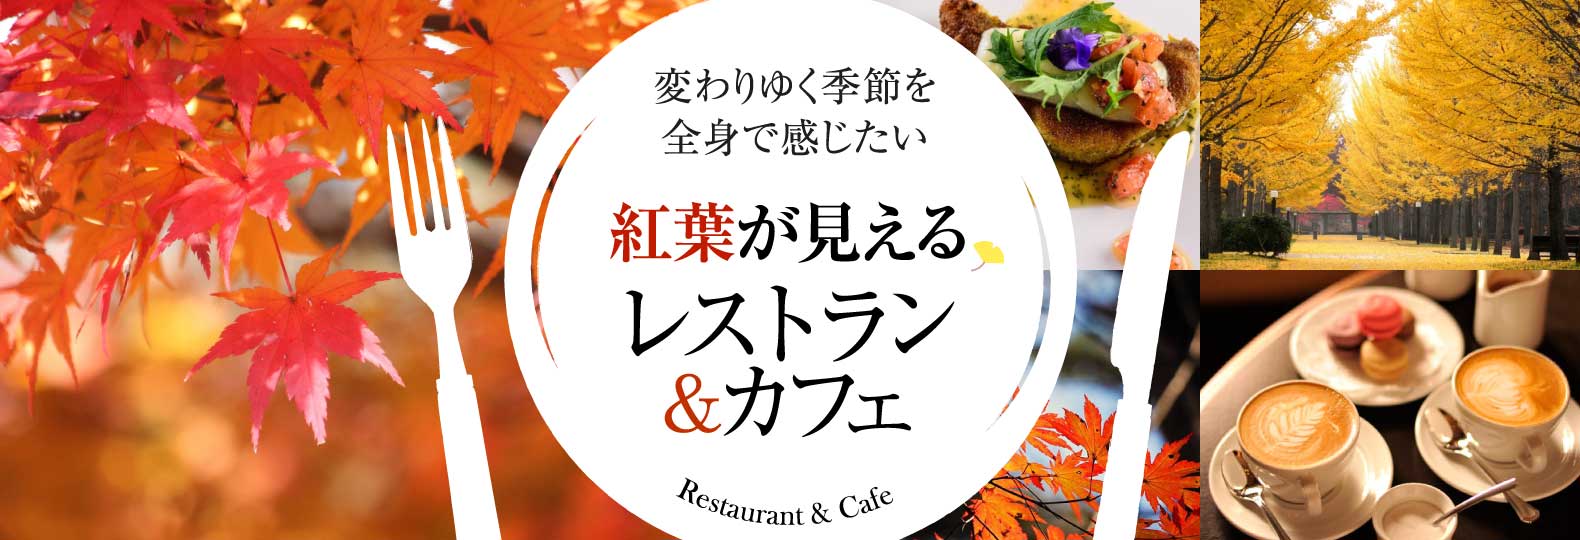 変わりゆく季節を全身で感じたい 紅葉が見えるレストラン&カフェ